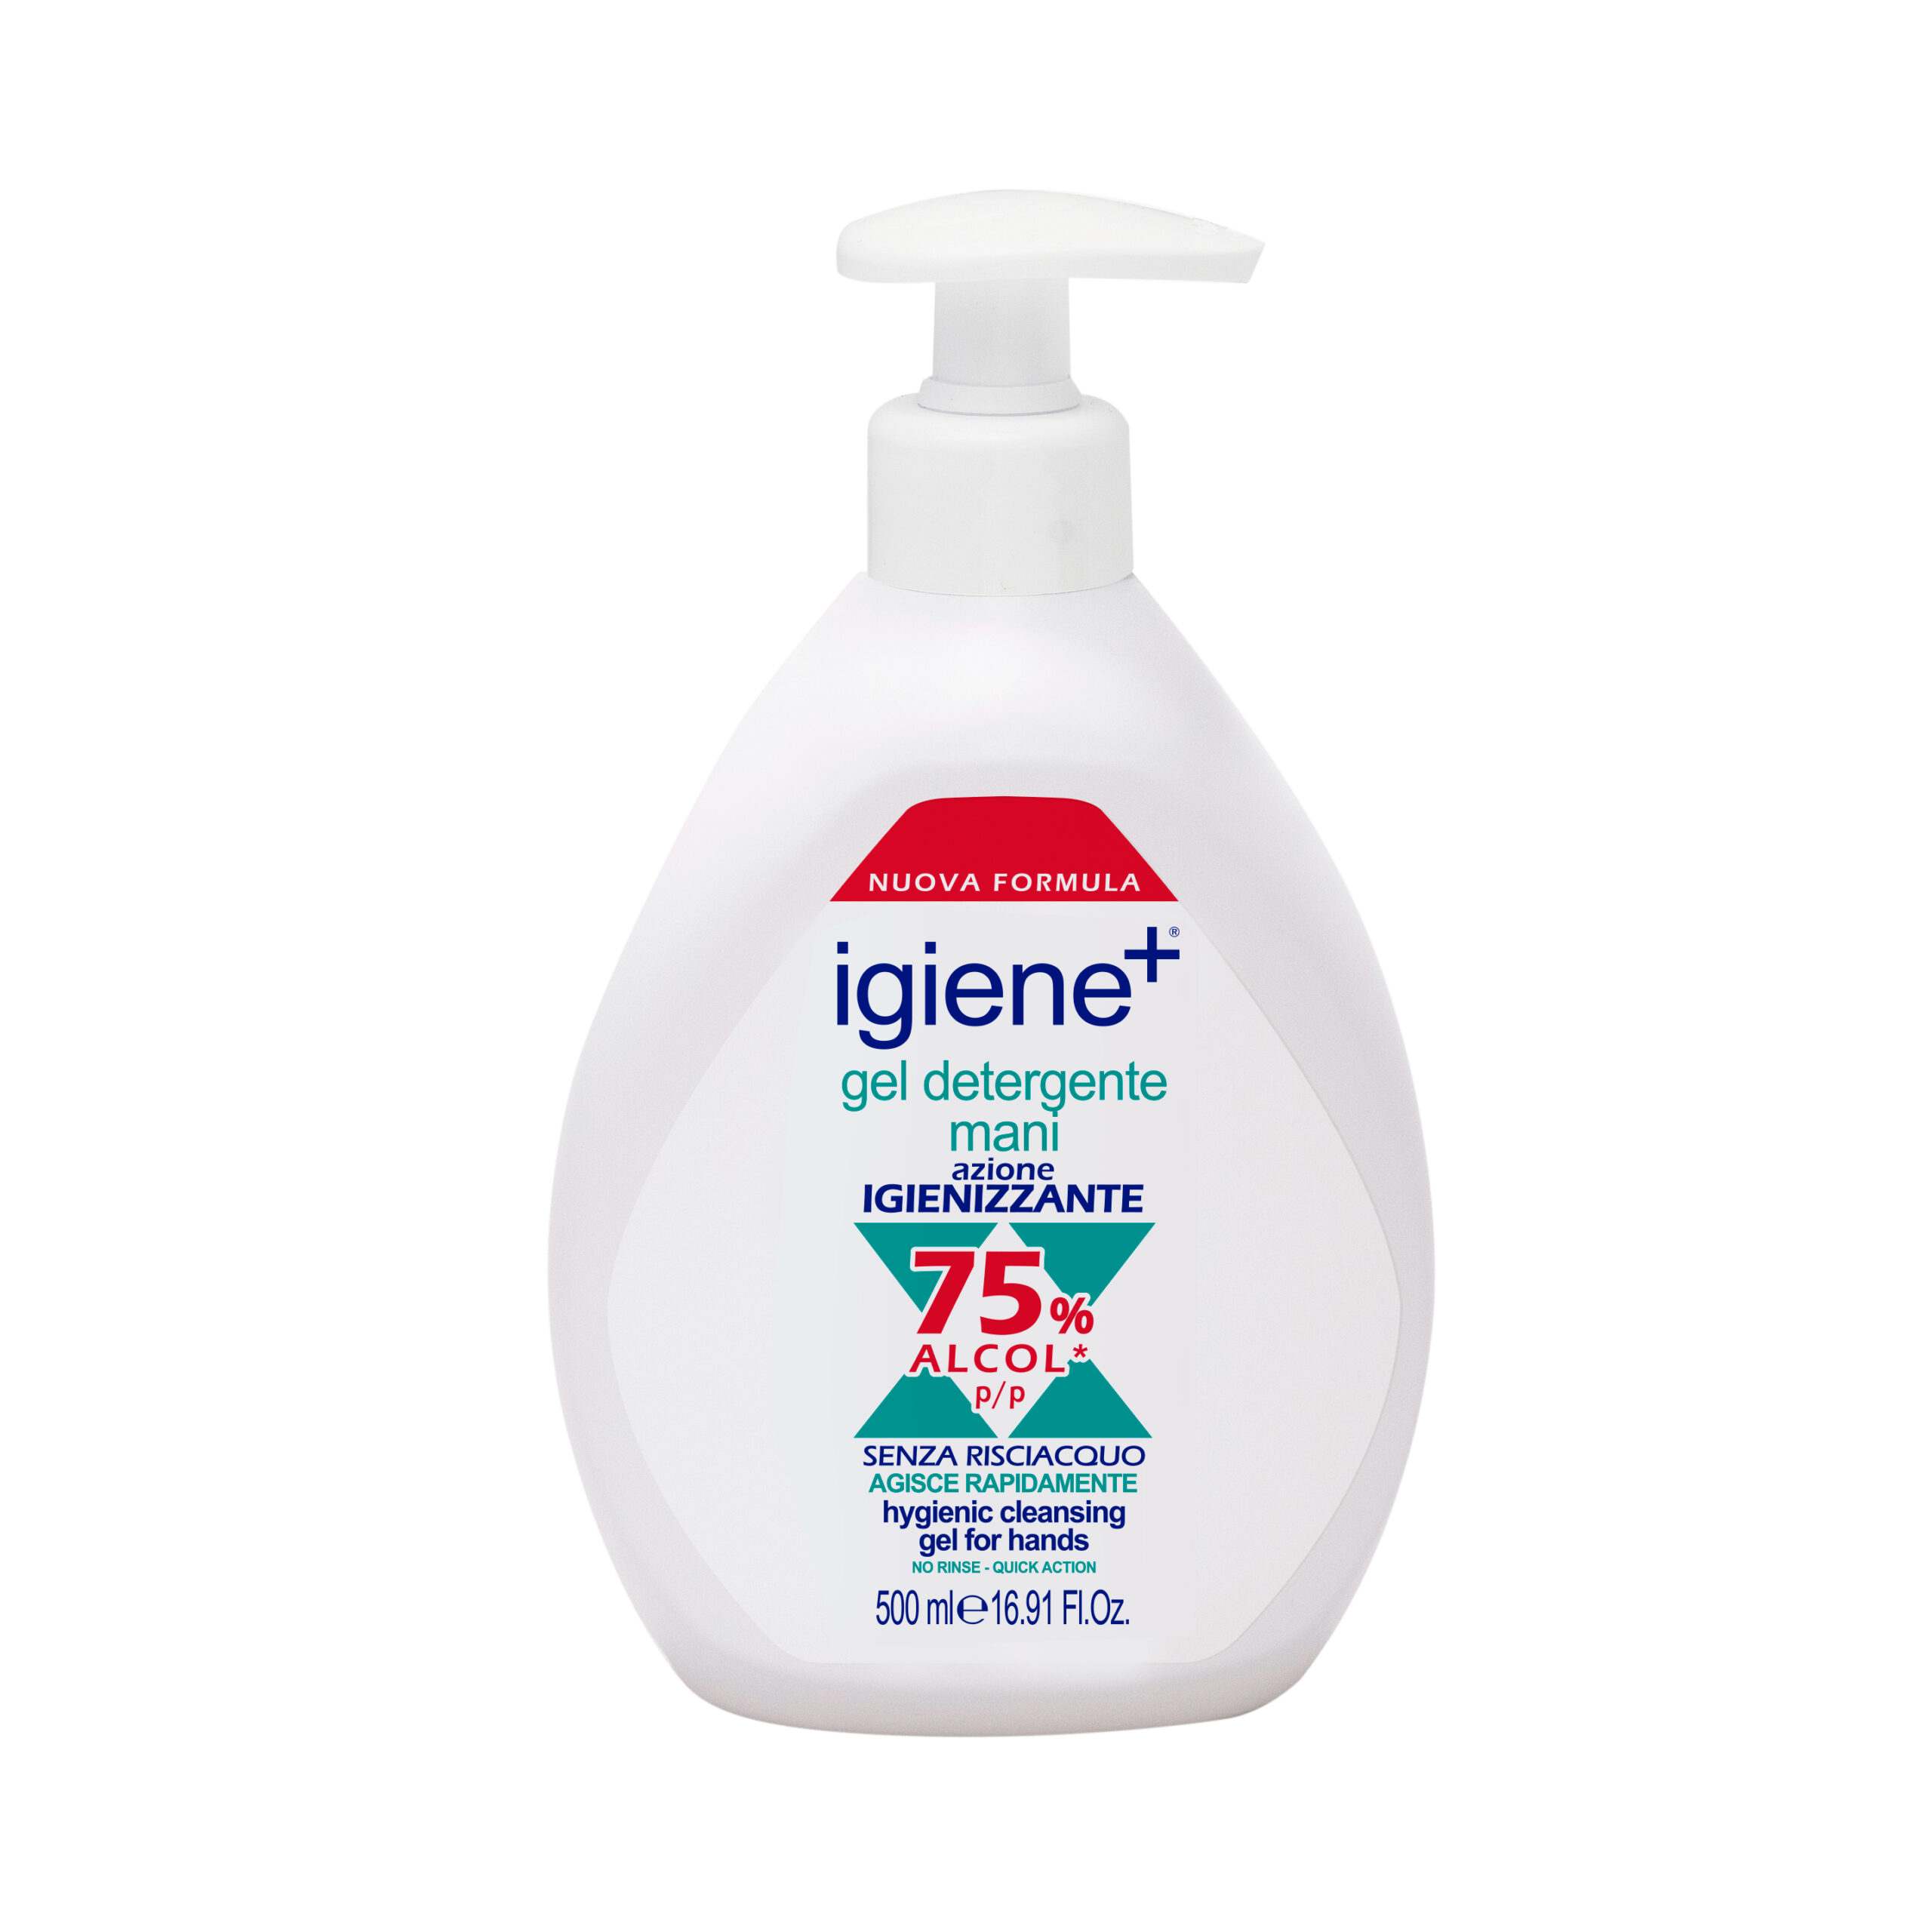 Gel Detergente Mani con alcol al 75%: pulizia, igiene e sicurezza totale